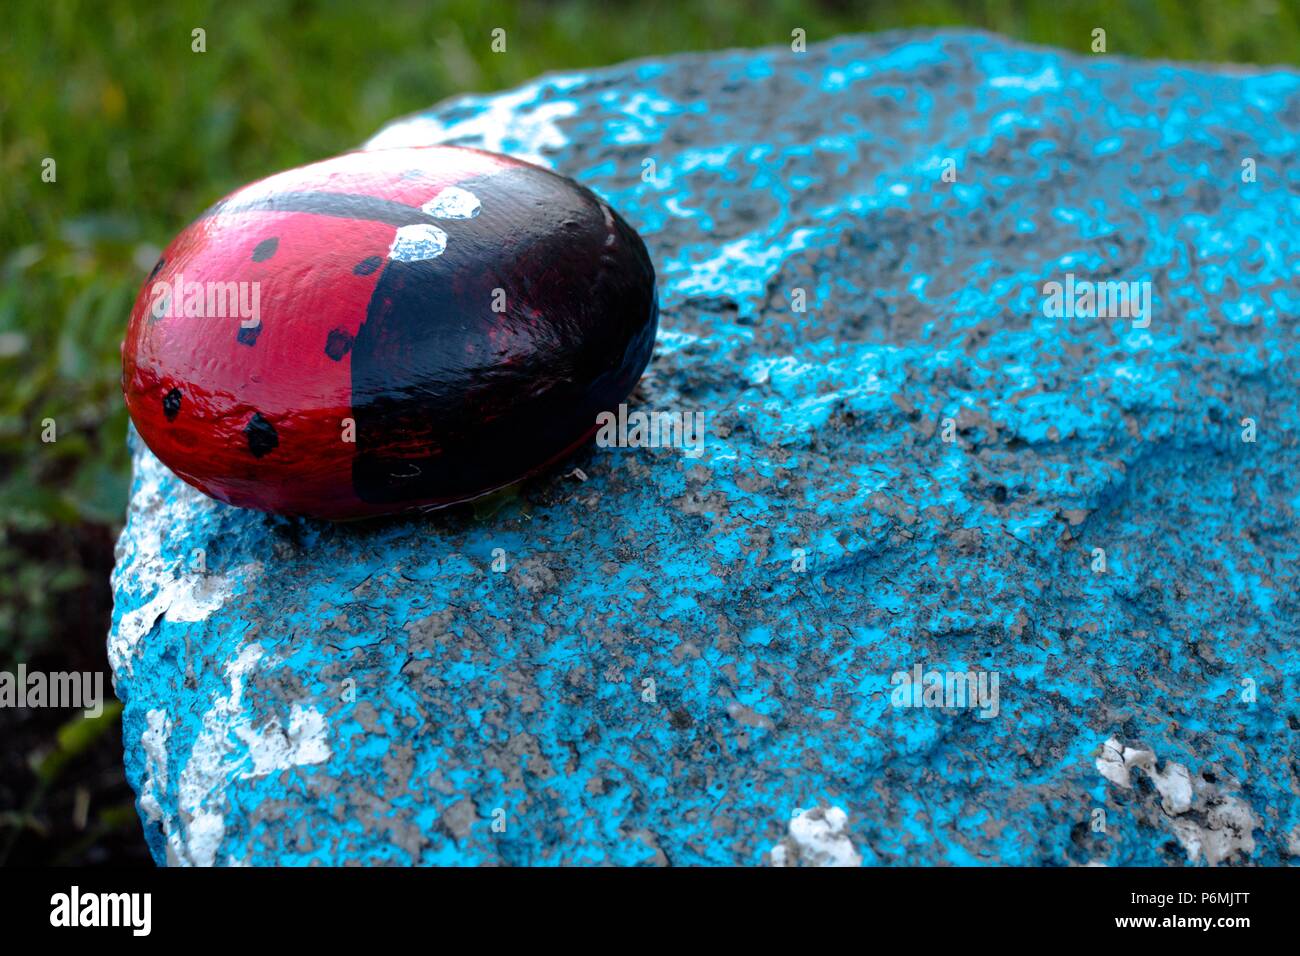 Ein Insekt namens einen Marienkäfer ist der Stein und malte Tinten. Die Figur steht im Garten auf einem blauen Stein. Sehr schöne und interessante h Stockfoto